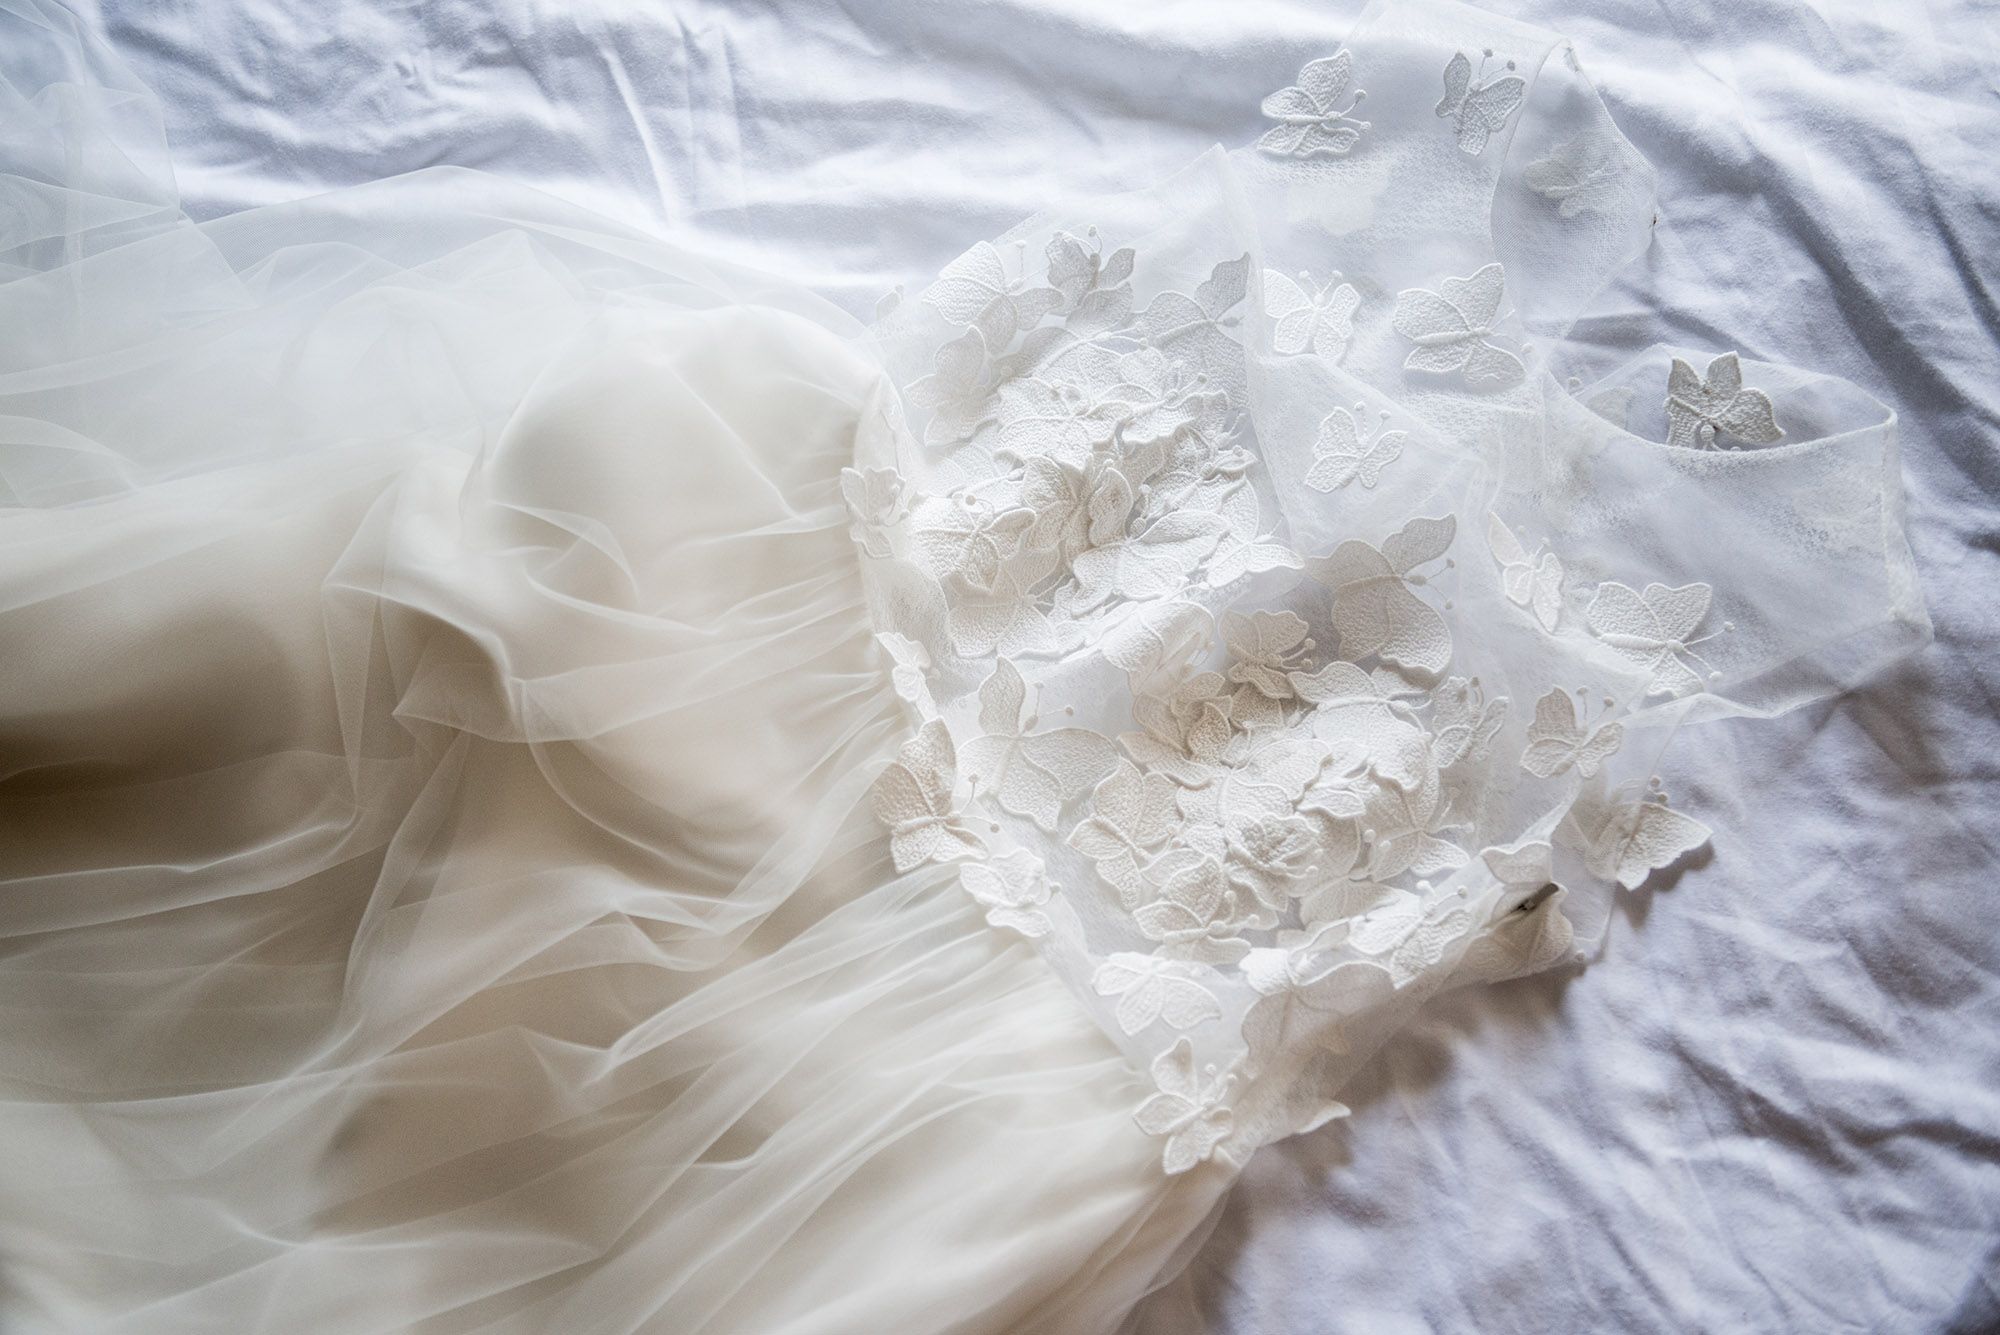 Ein weißes Hochzeitskleid liegt ausgebreitet auf einem weißen Untergrund.